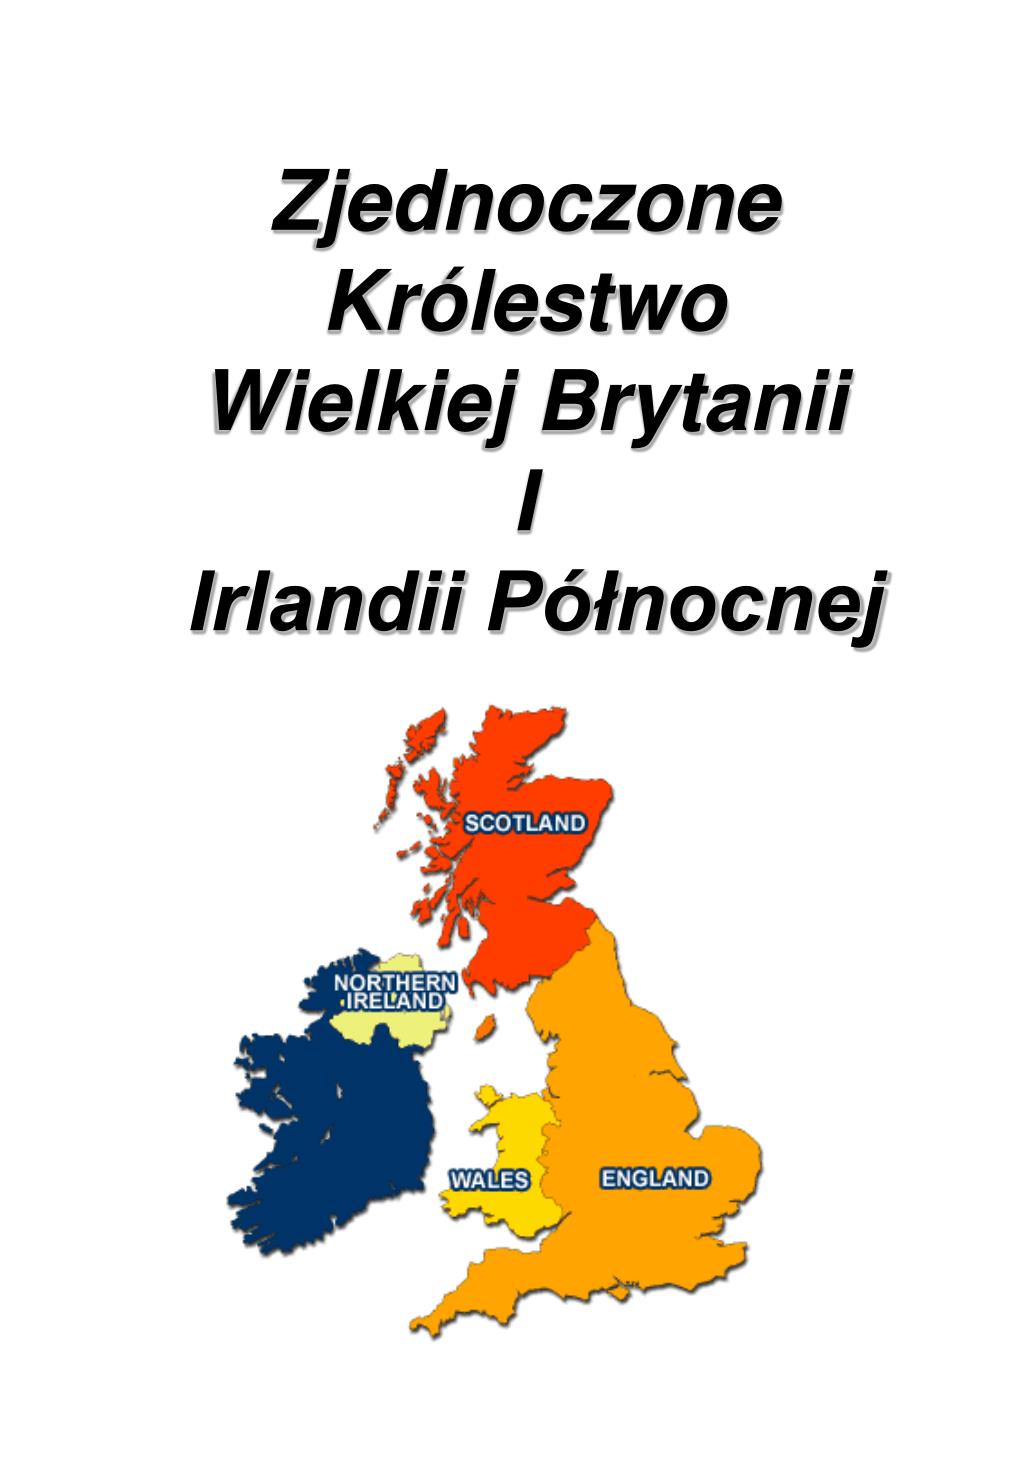 PPT - Zjednoczone Królestwo Wielkiej Brytanii I Irlandii Północnej  PowerPoint Presentation - ID:4991328